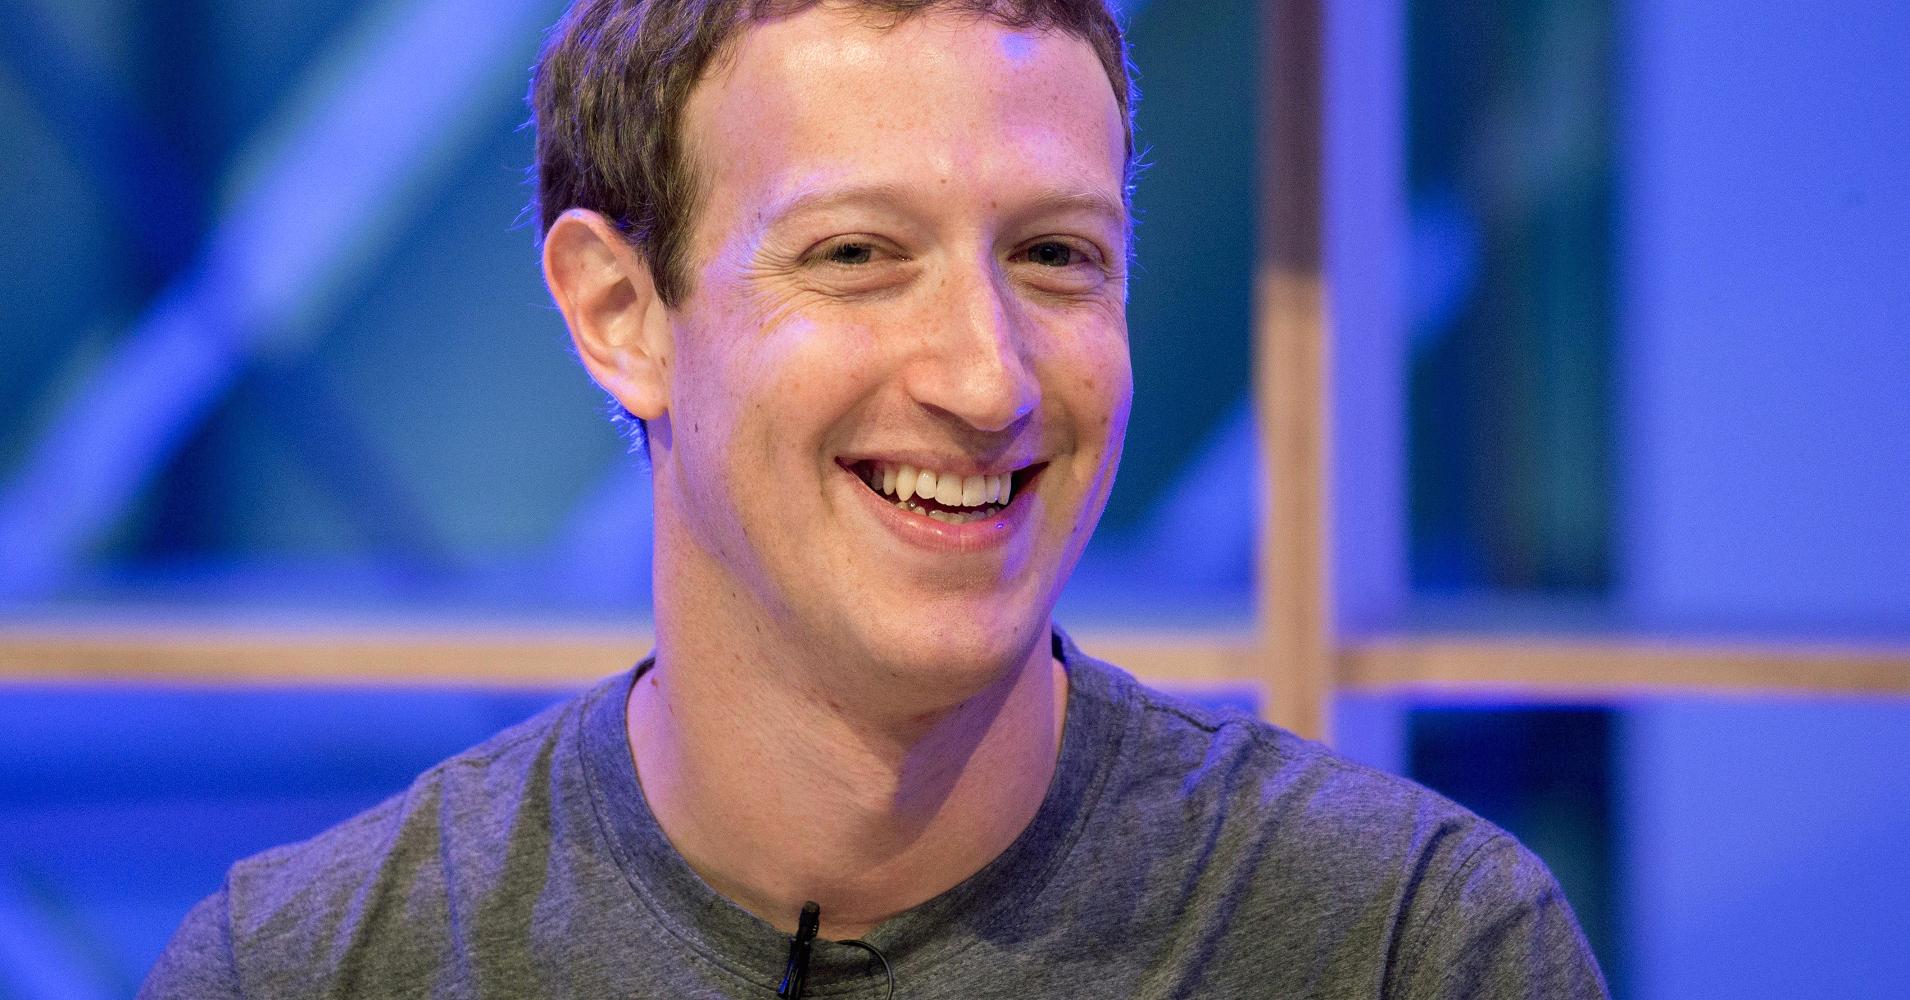 Zuckerberg makes 'fixing' Facebook a personal goal